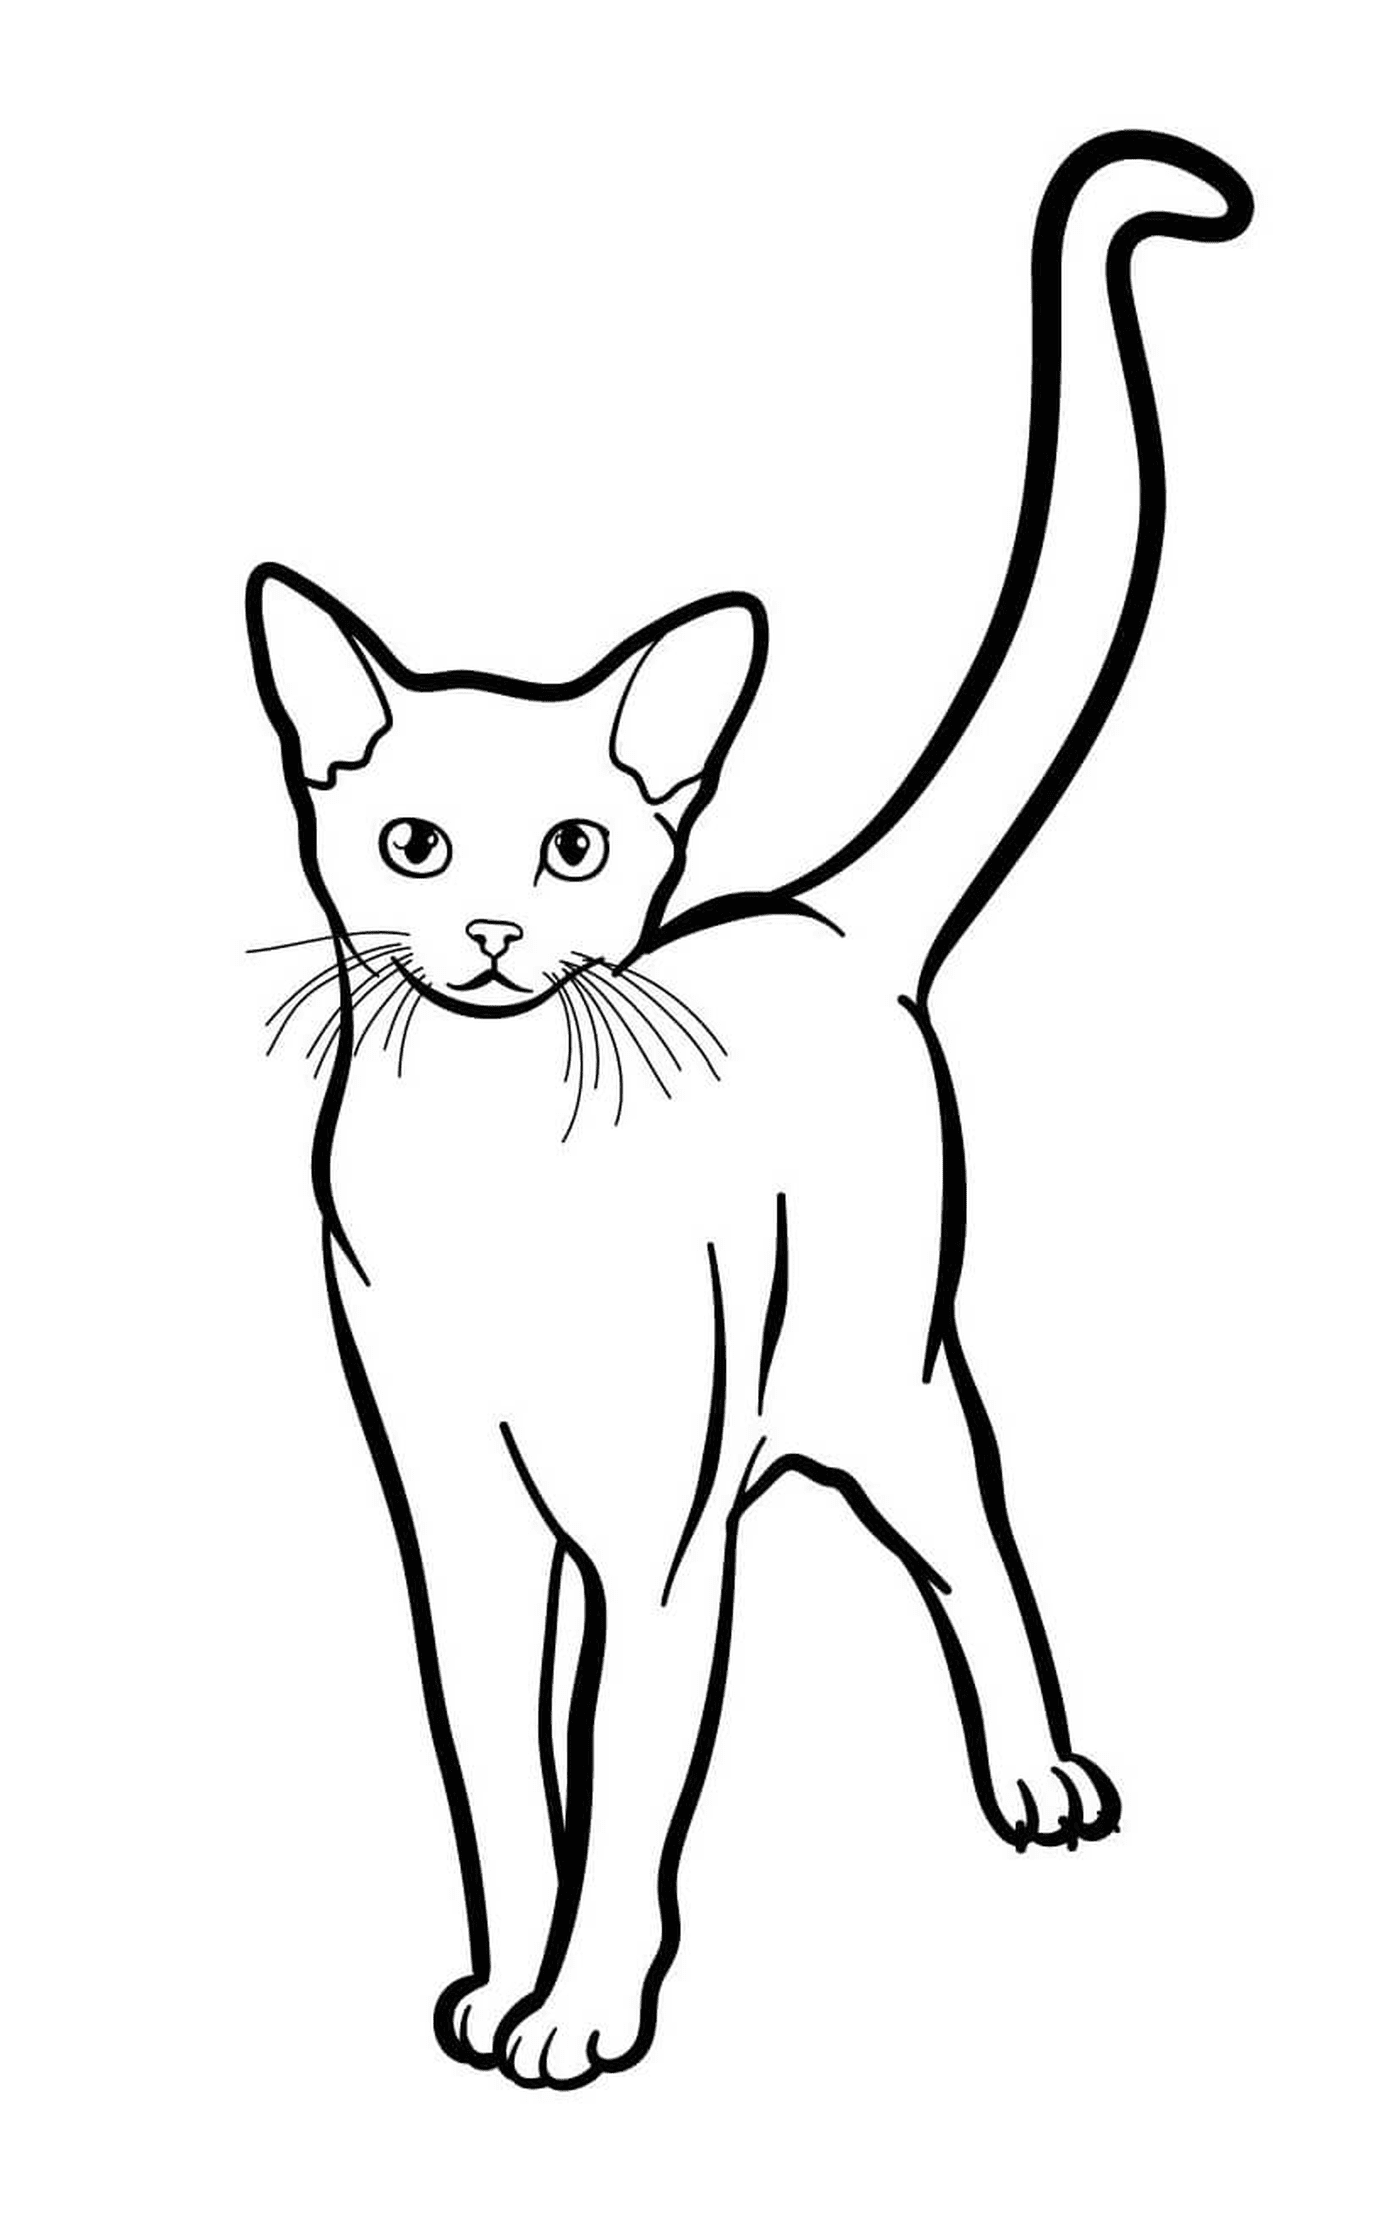  Abisinio, el gato exótico con ojos verdes 